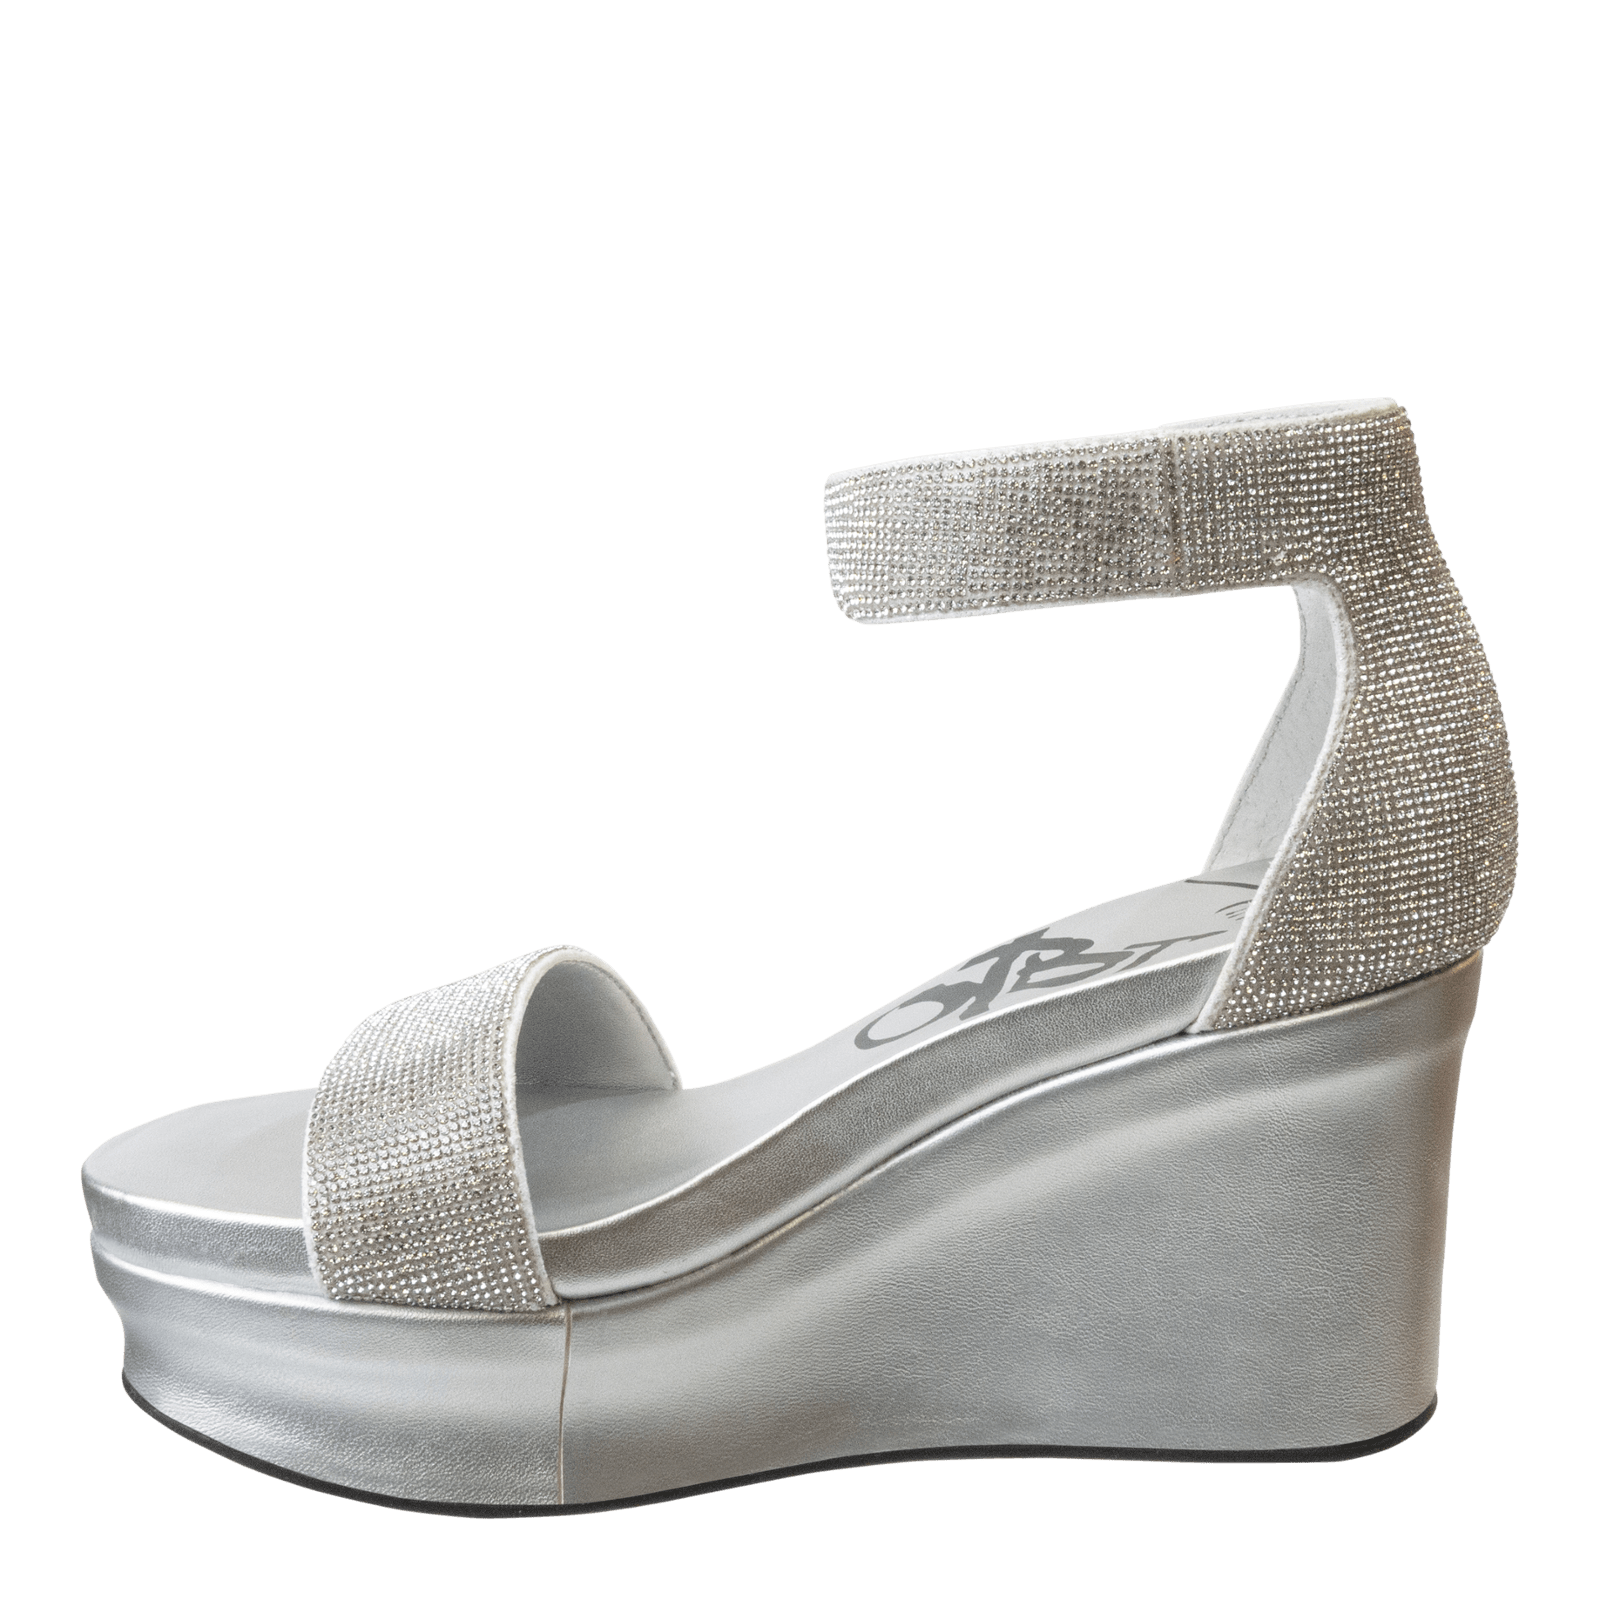 Camel Sandals - Lace-Up Sandals - Platform Sandals - Wedges - Lulus